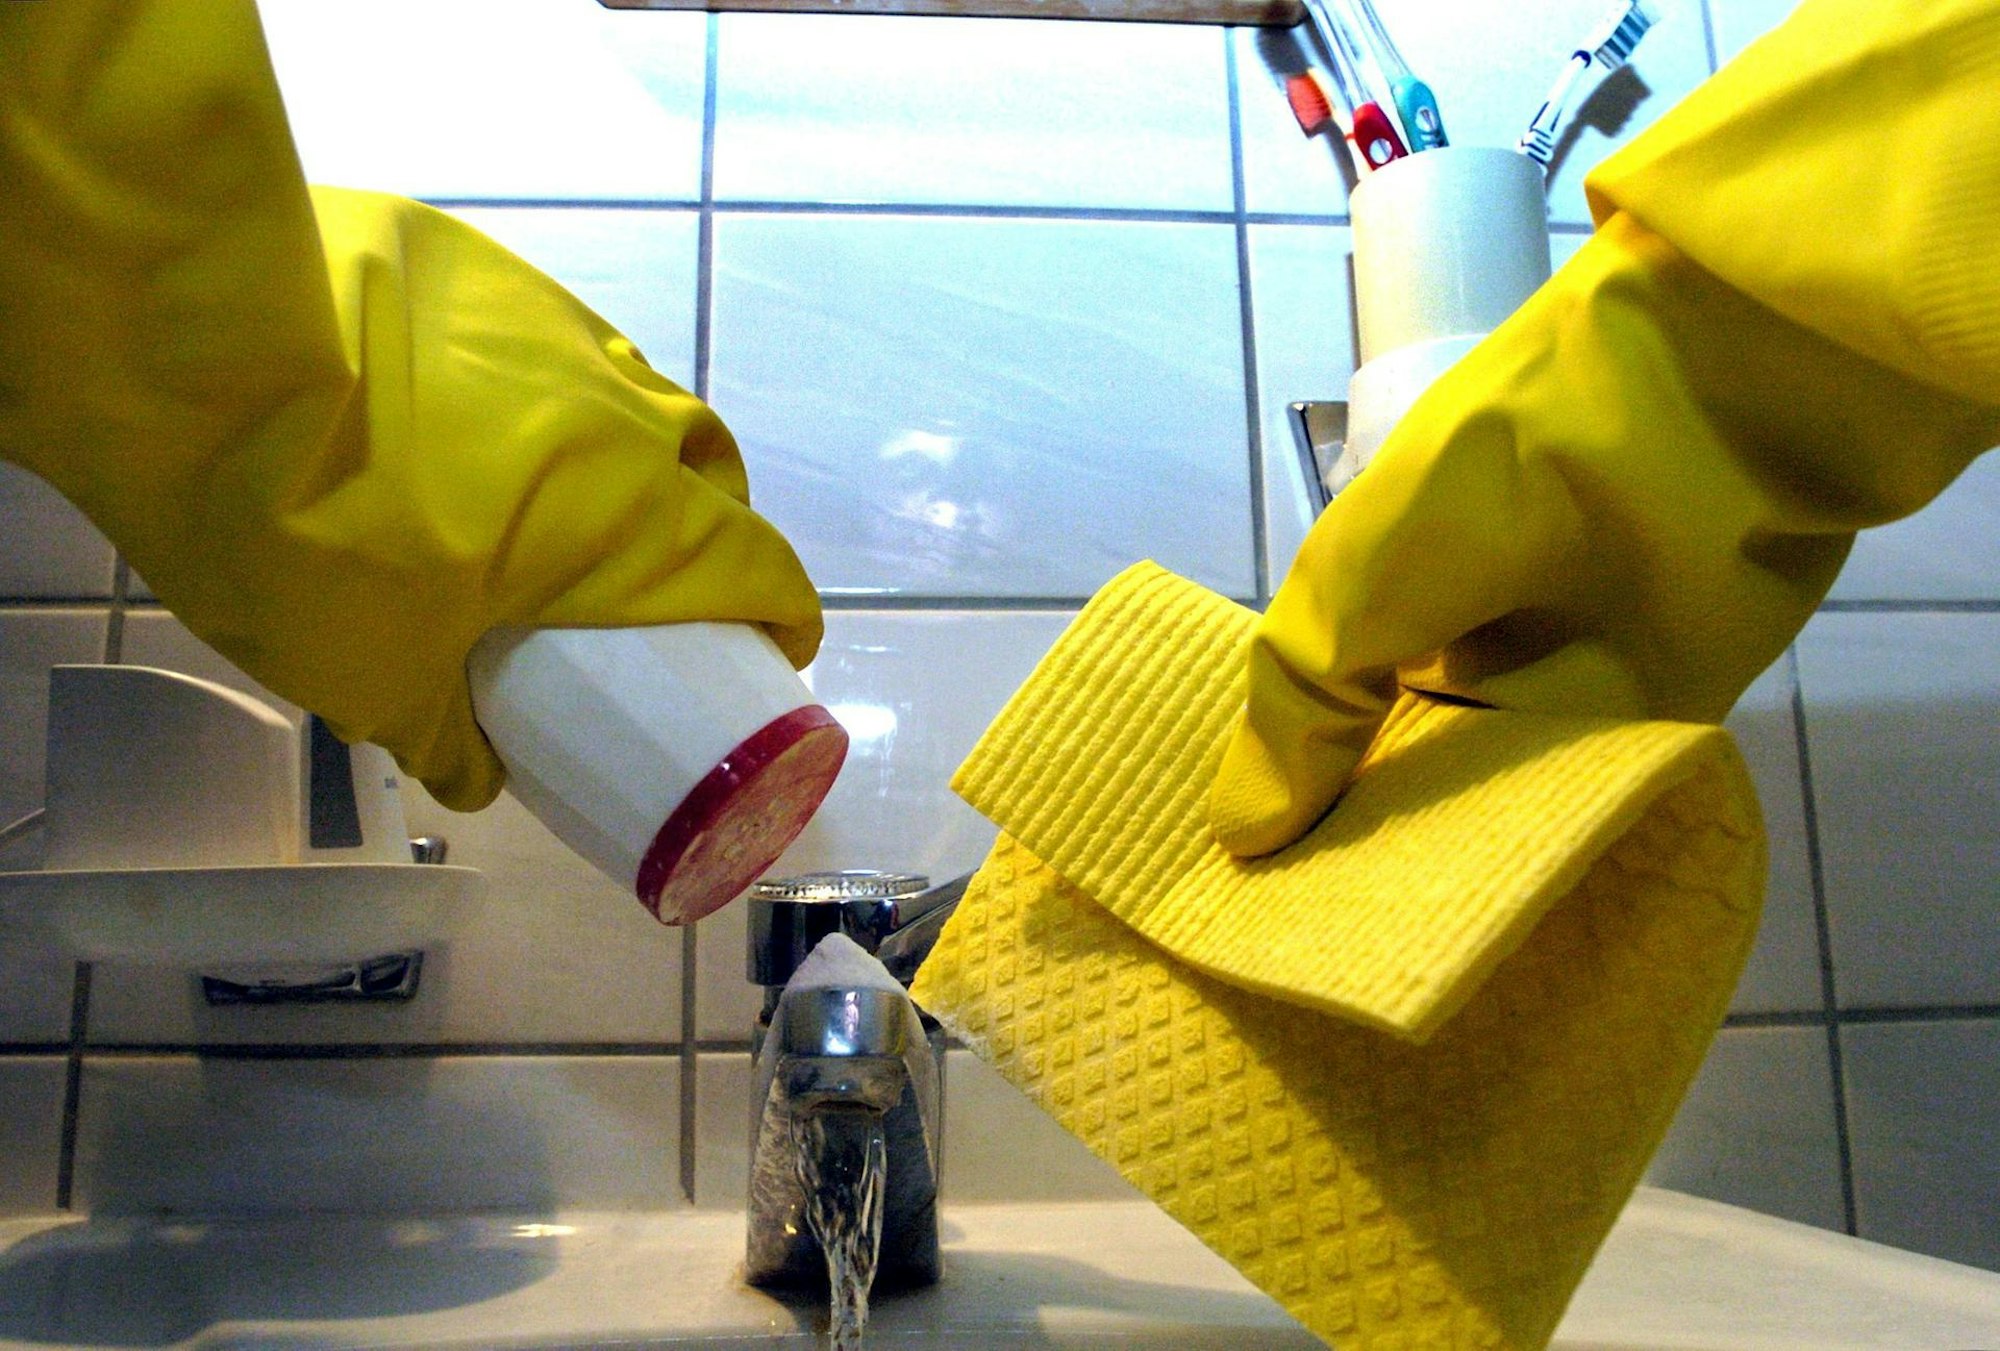 Putzfrau Haushaltshilfe Waschbecken Handschuhe Lappen Reinigung